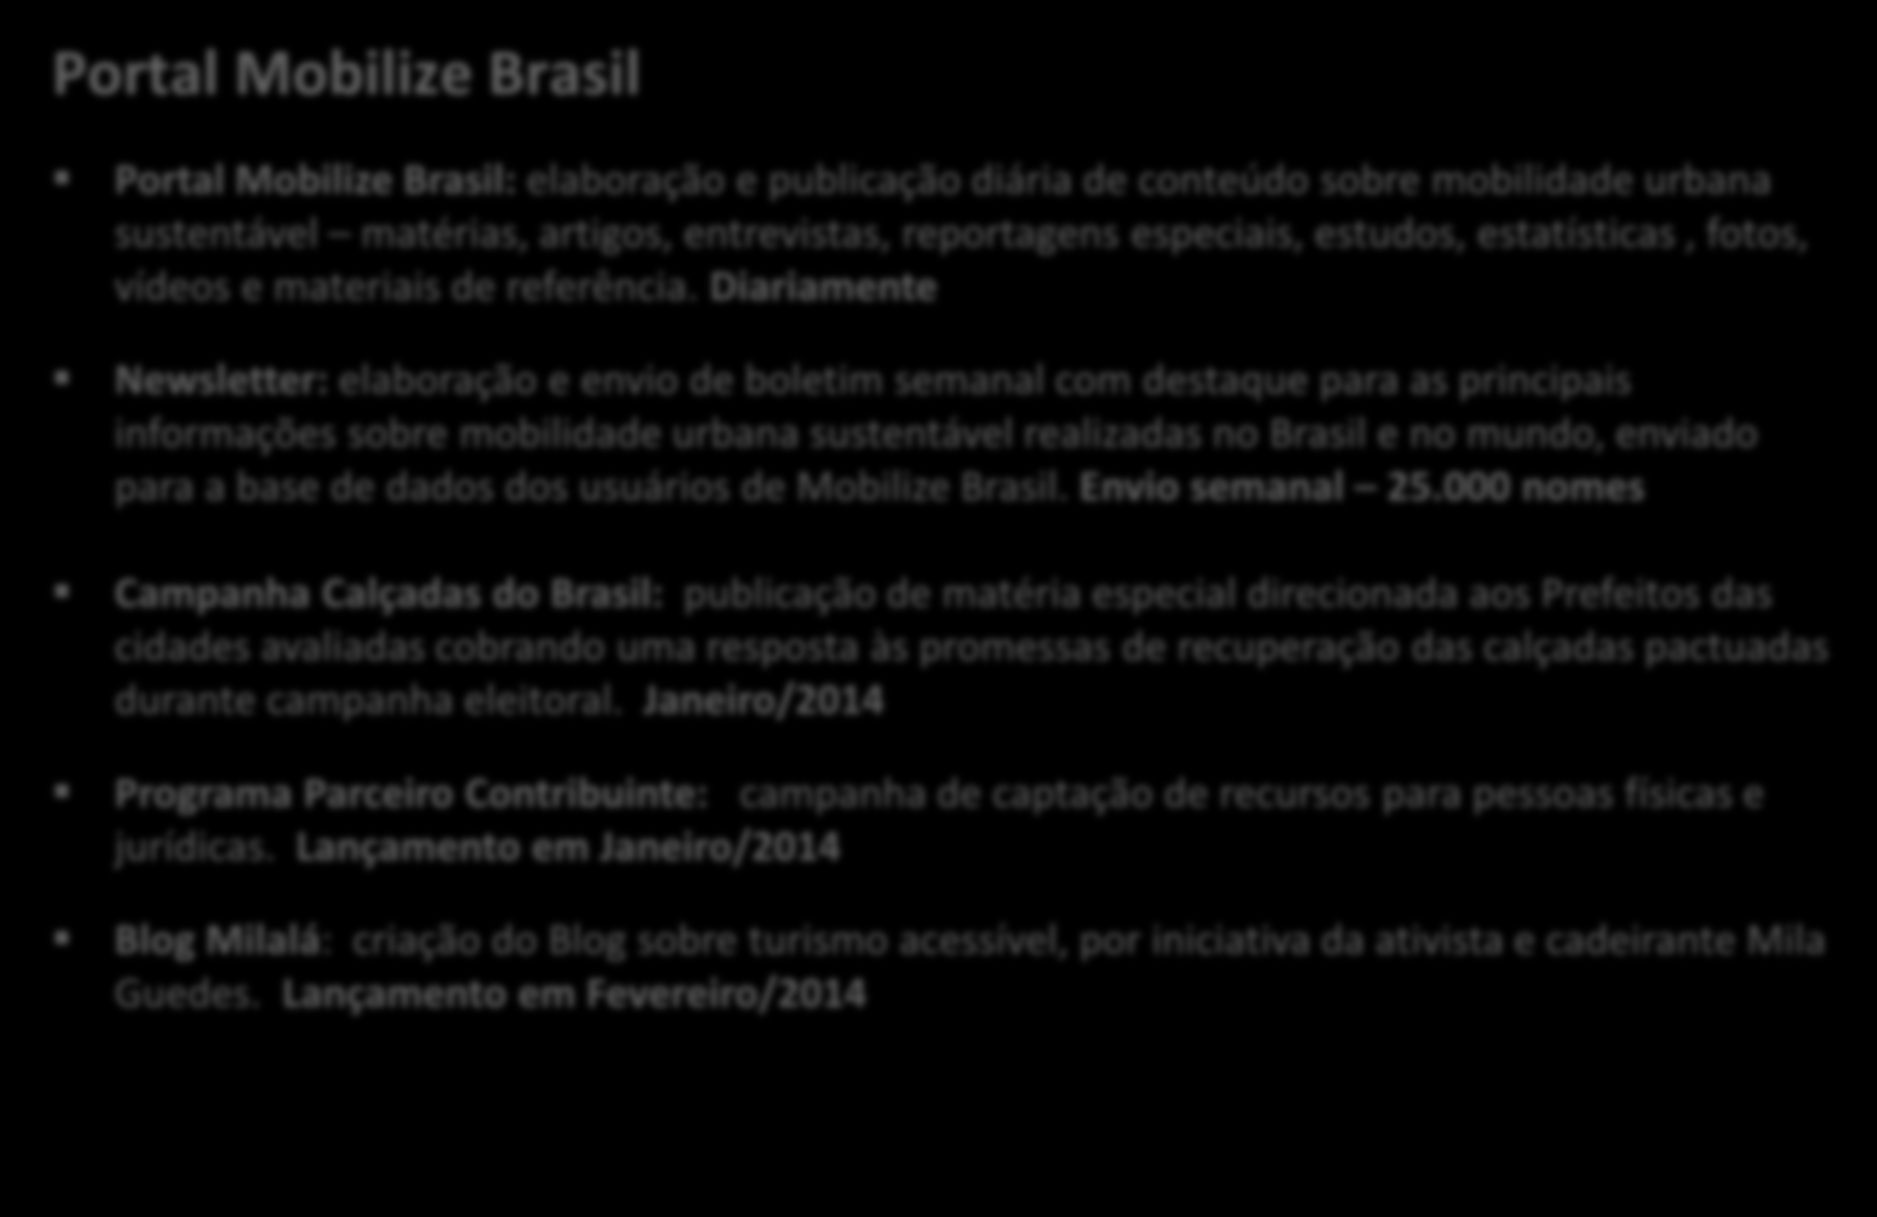 Mobilize Brasil: Atividades realizadas Portal Mobilize Brasil Portal Mobilize Brasil: elaboração e publicação diária de conteúdo sobre mobilidade urbana sustentável matérias, artigos, entrevistas,